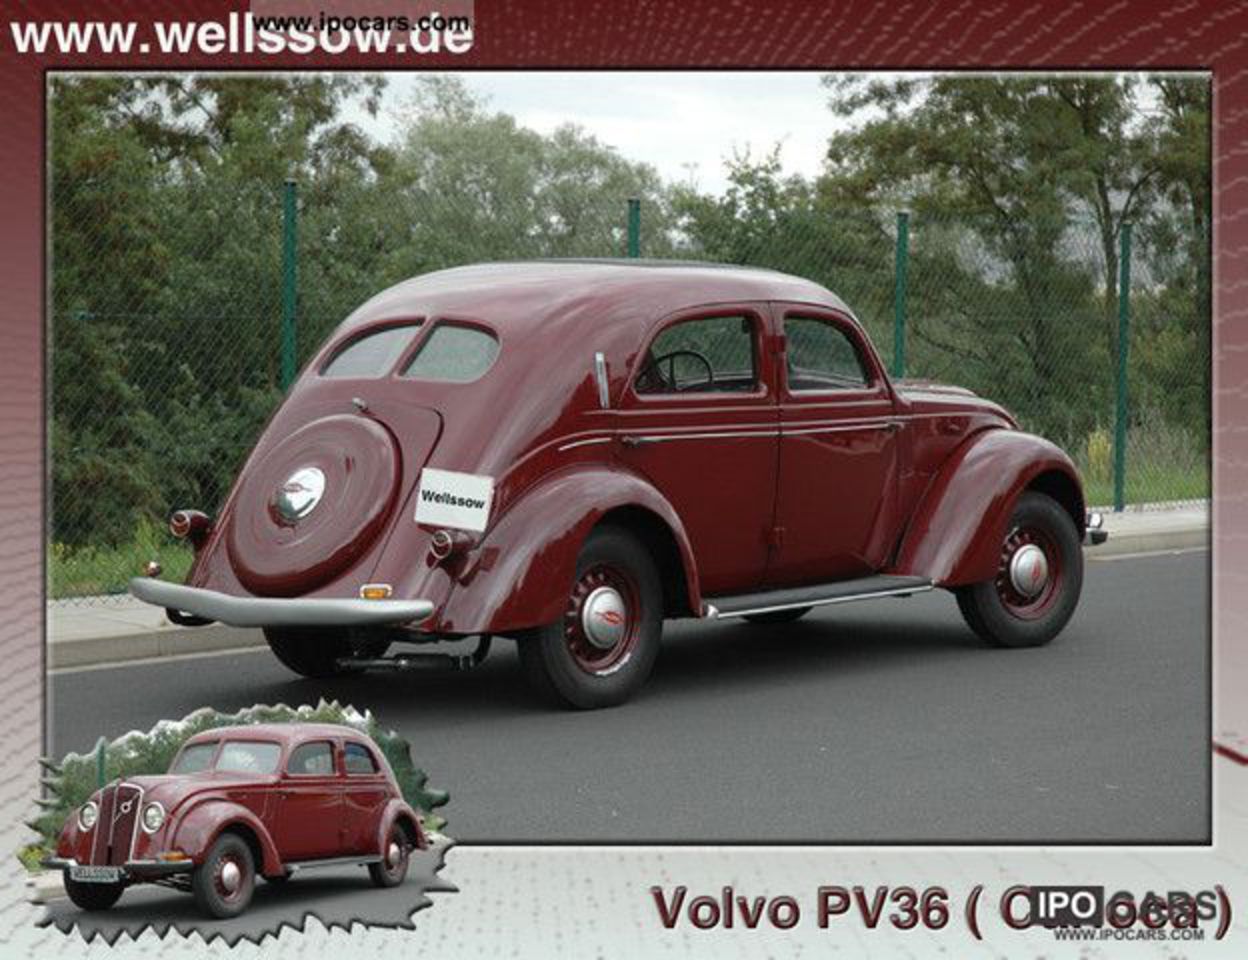 1936 Volvo PV36 Carioca Limousine